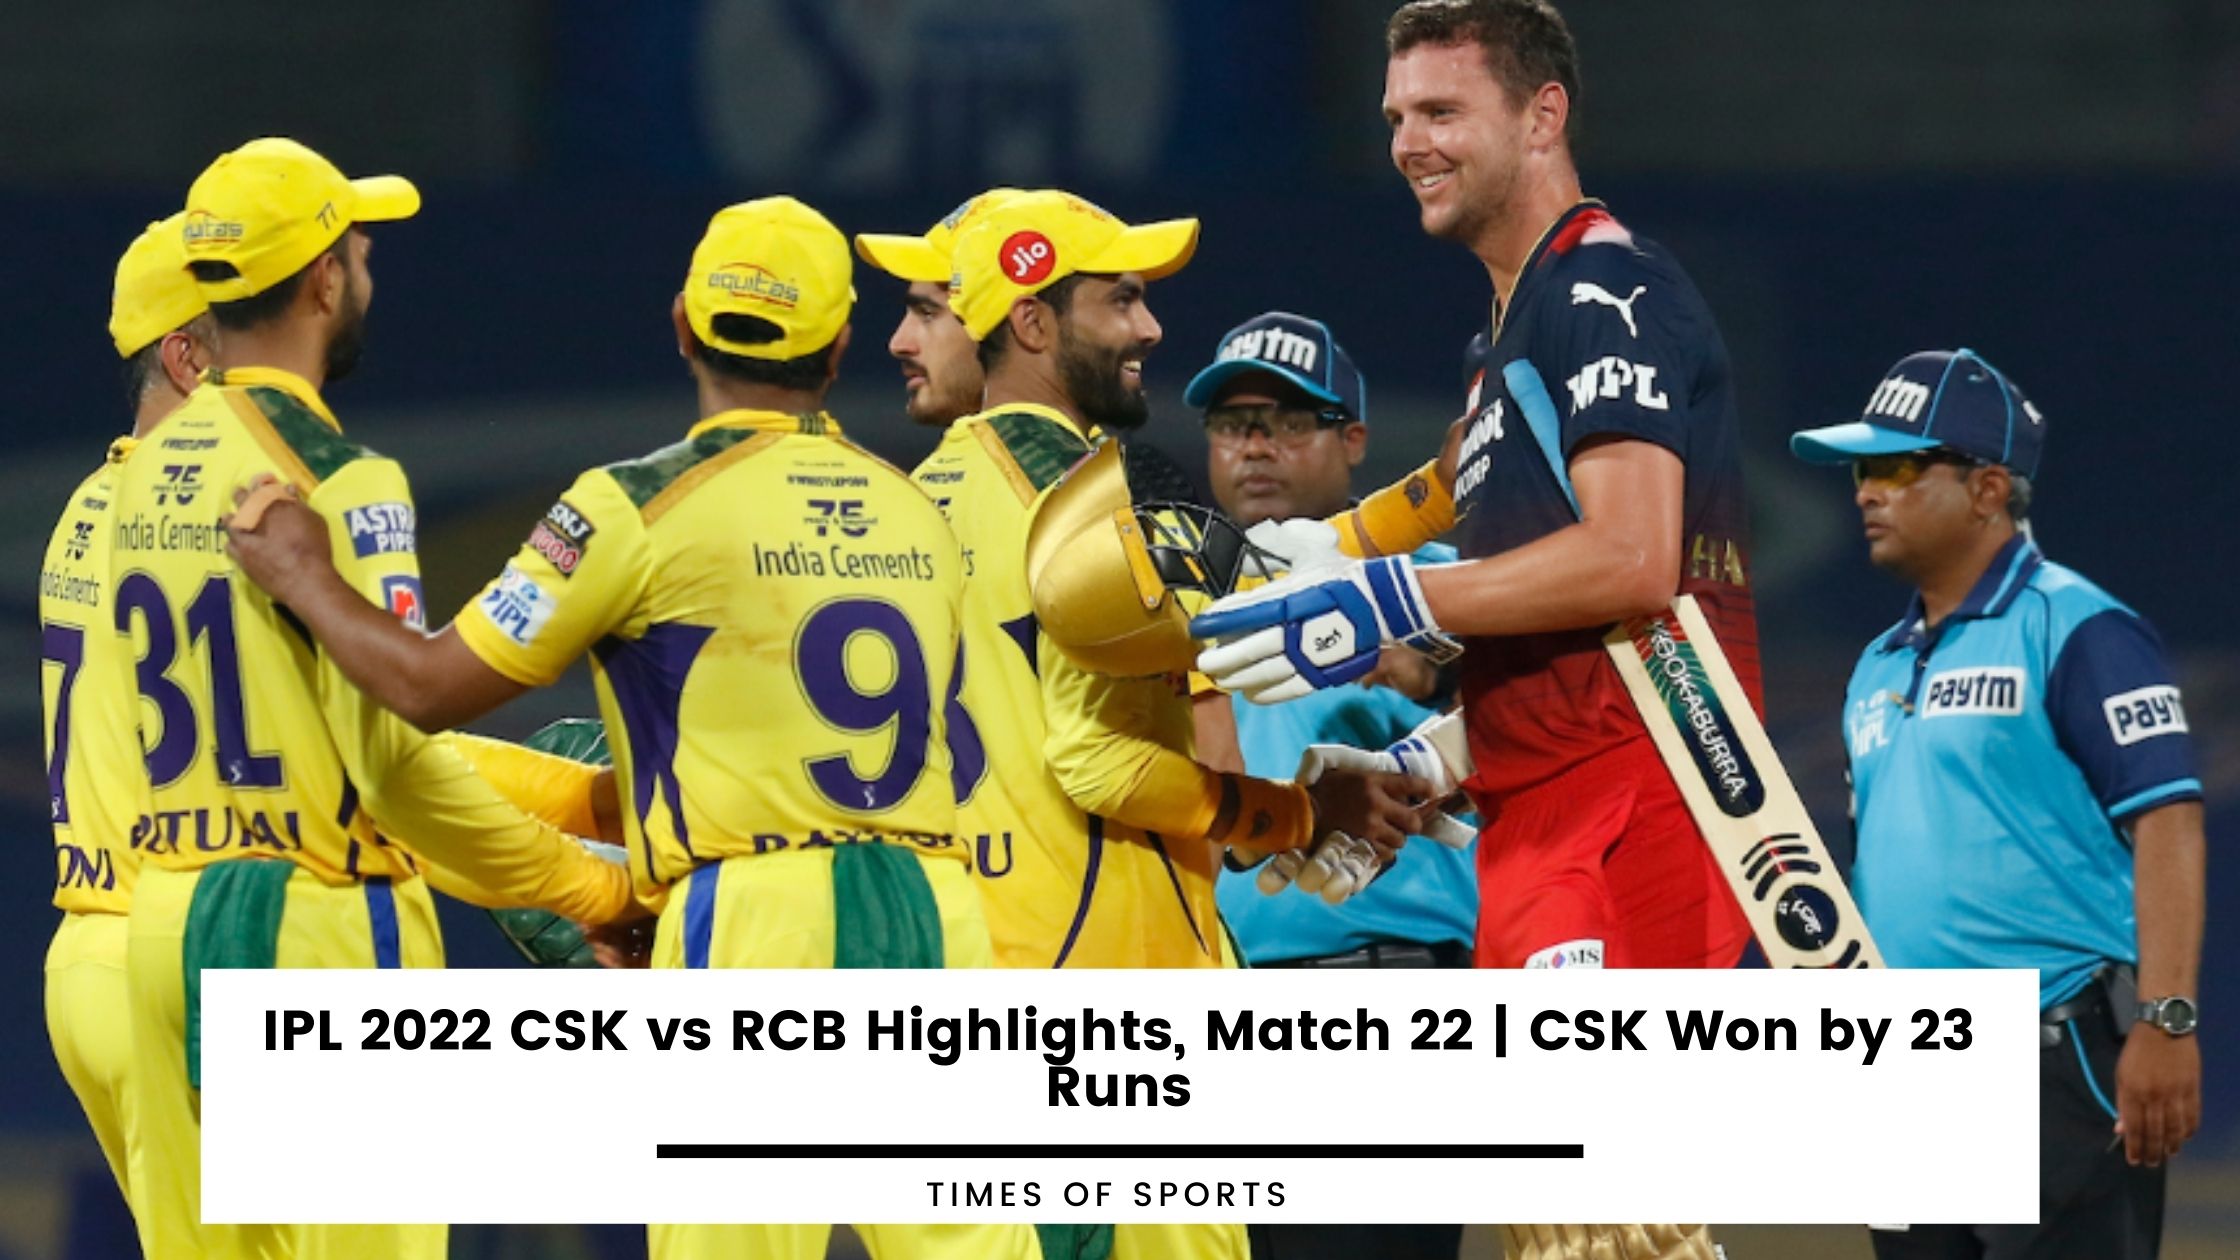 IPL 2022 CSK vs RCB Highlights, Match 22 by Runs